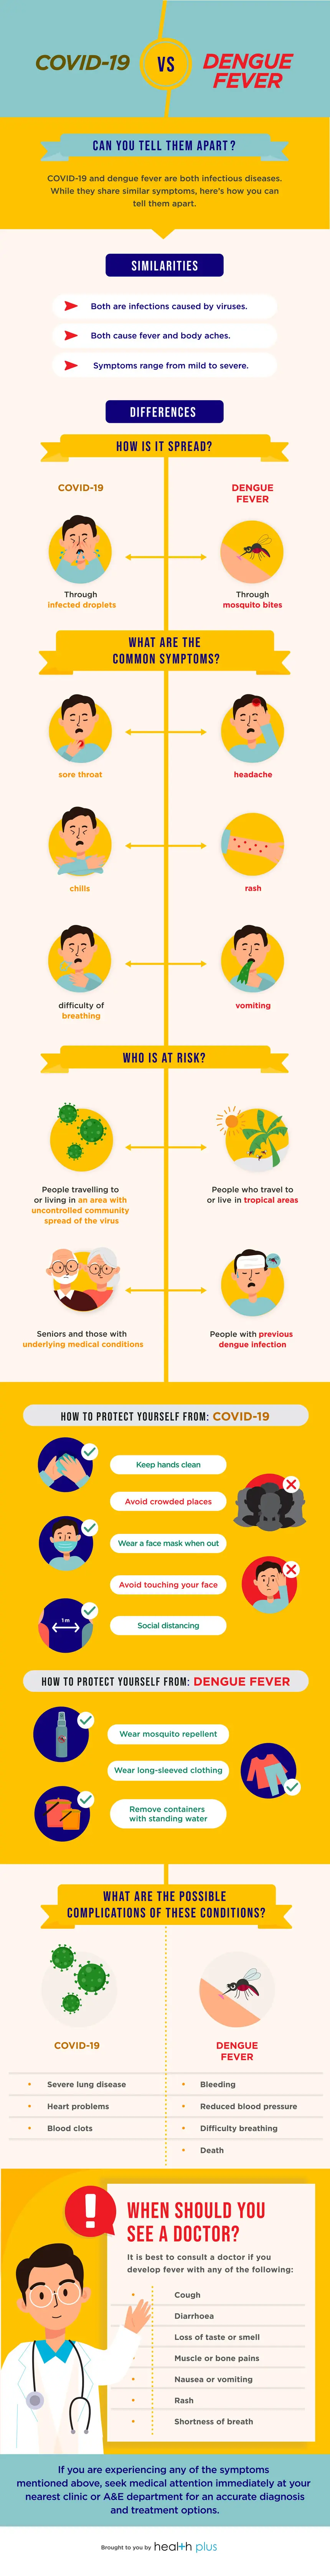 COVID-19 versus dengue